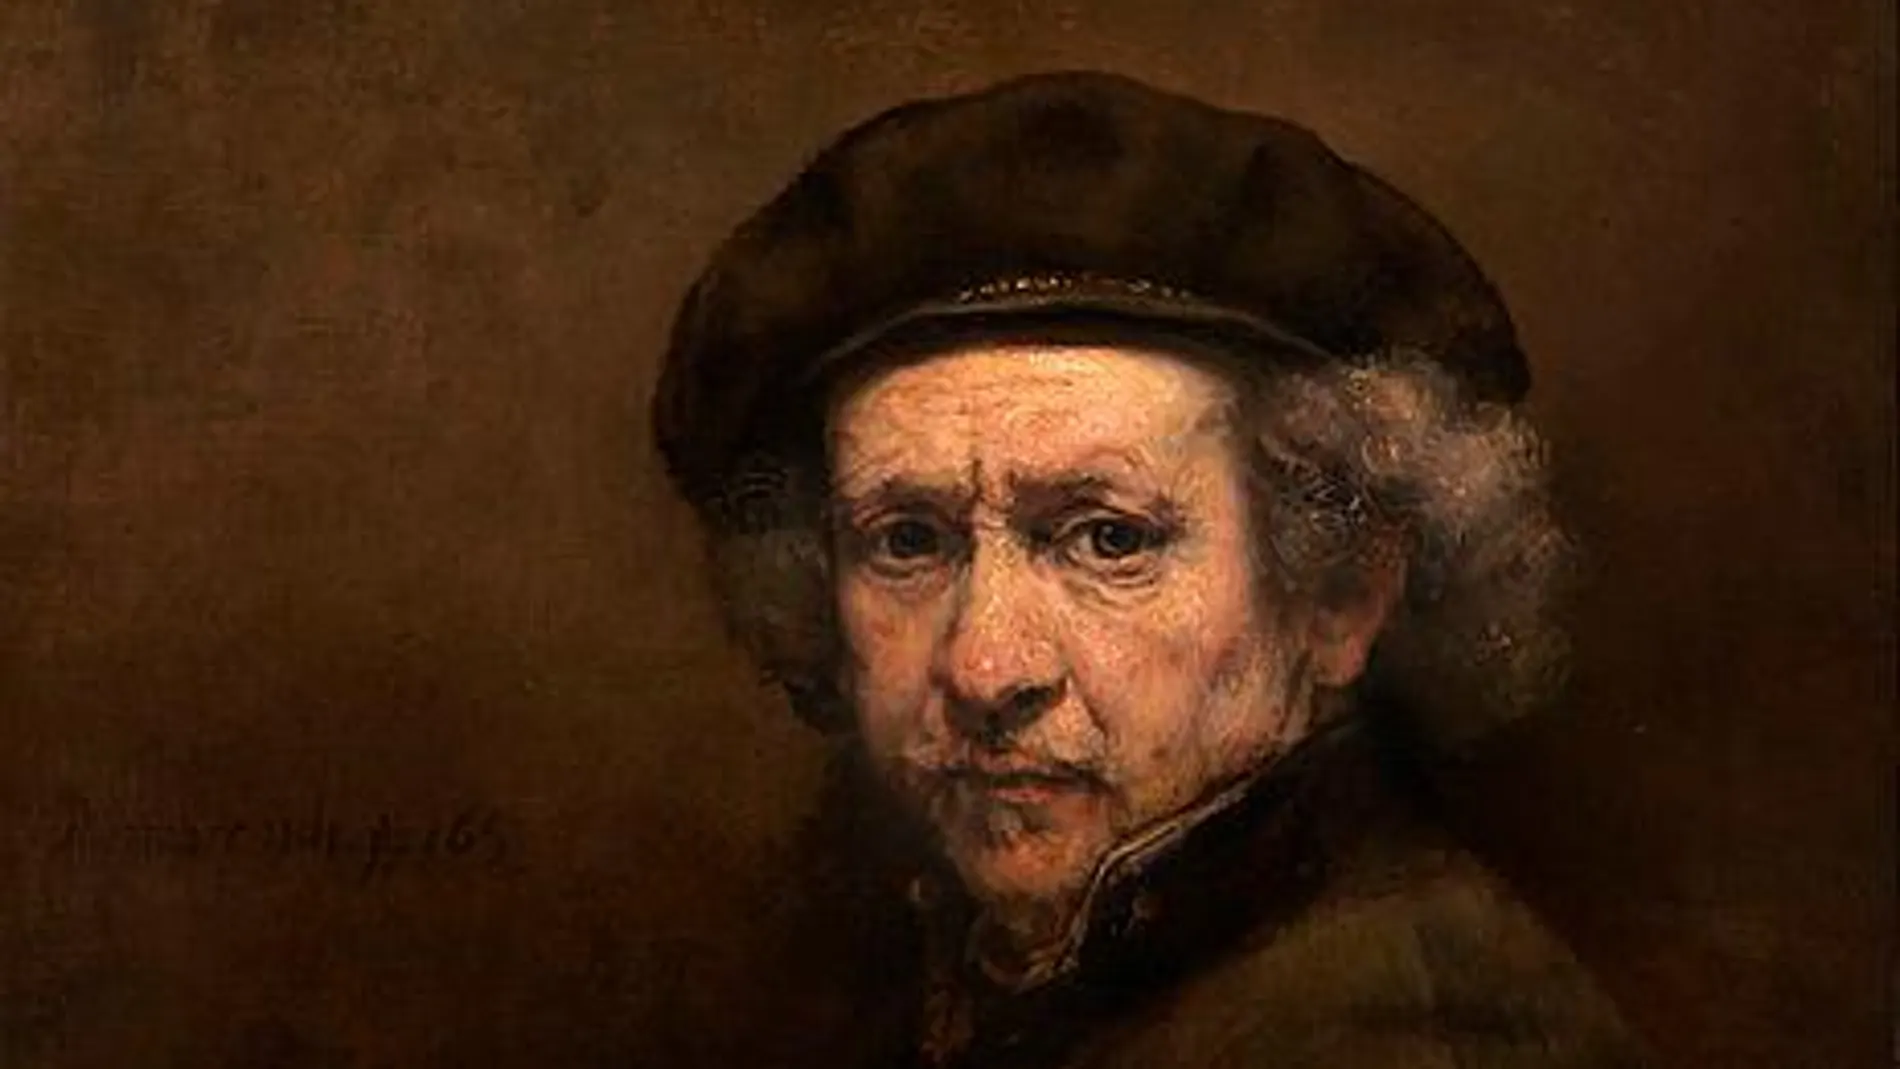 Autorretrato de Rembrandt, 1659